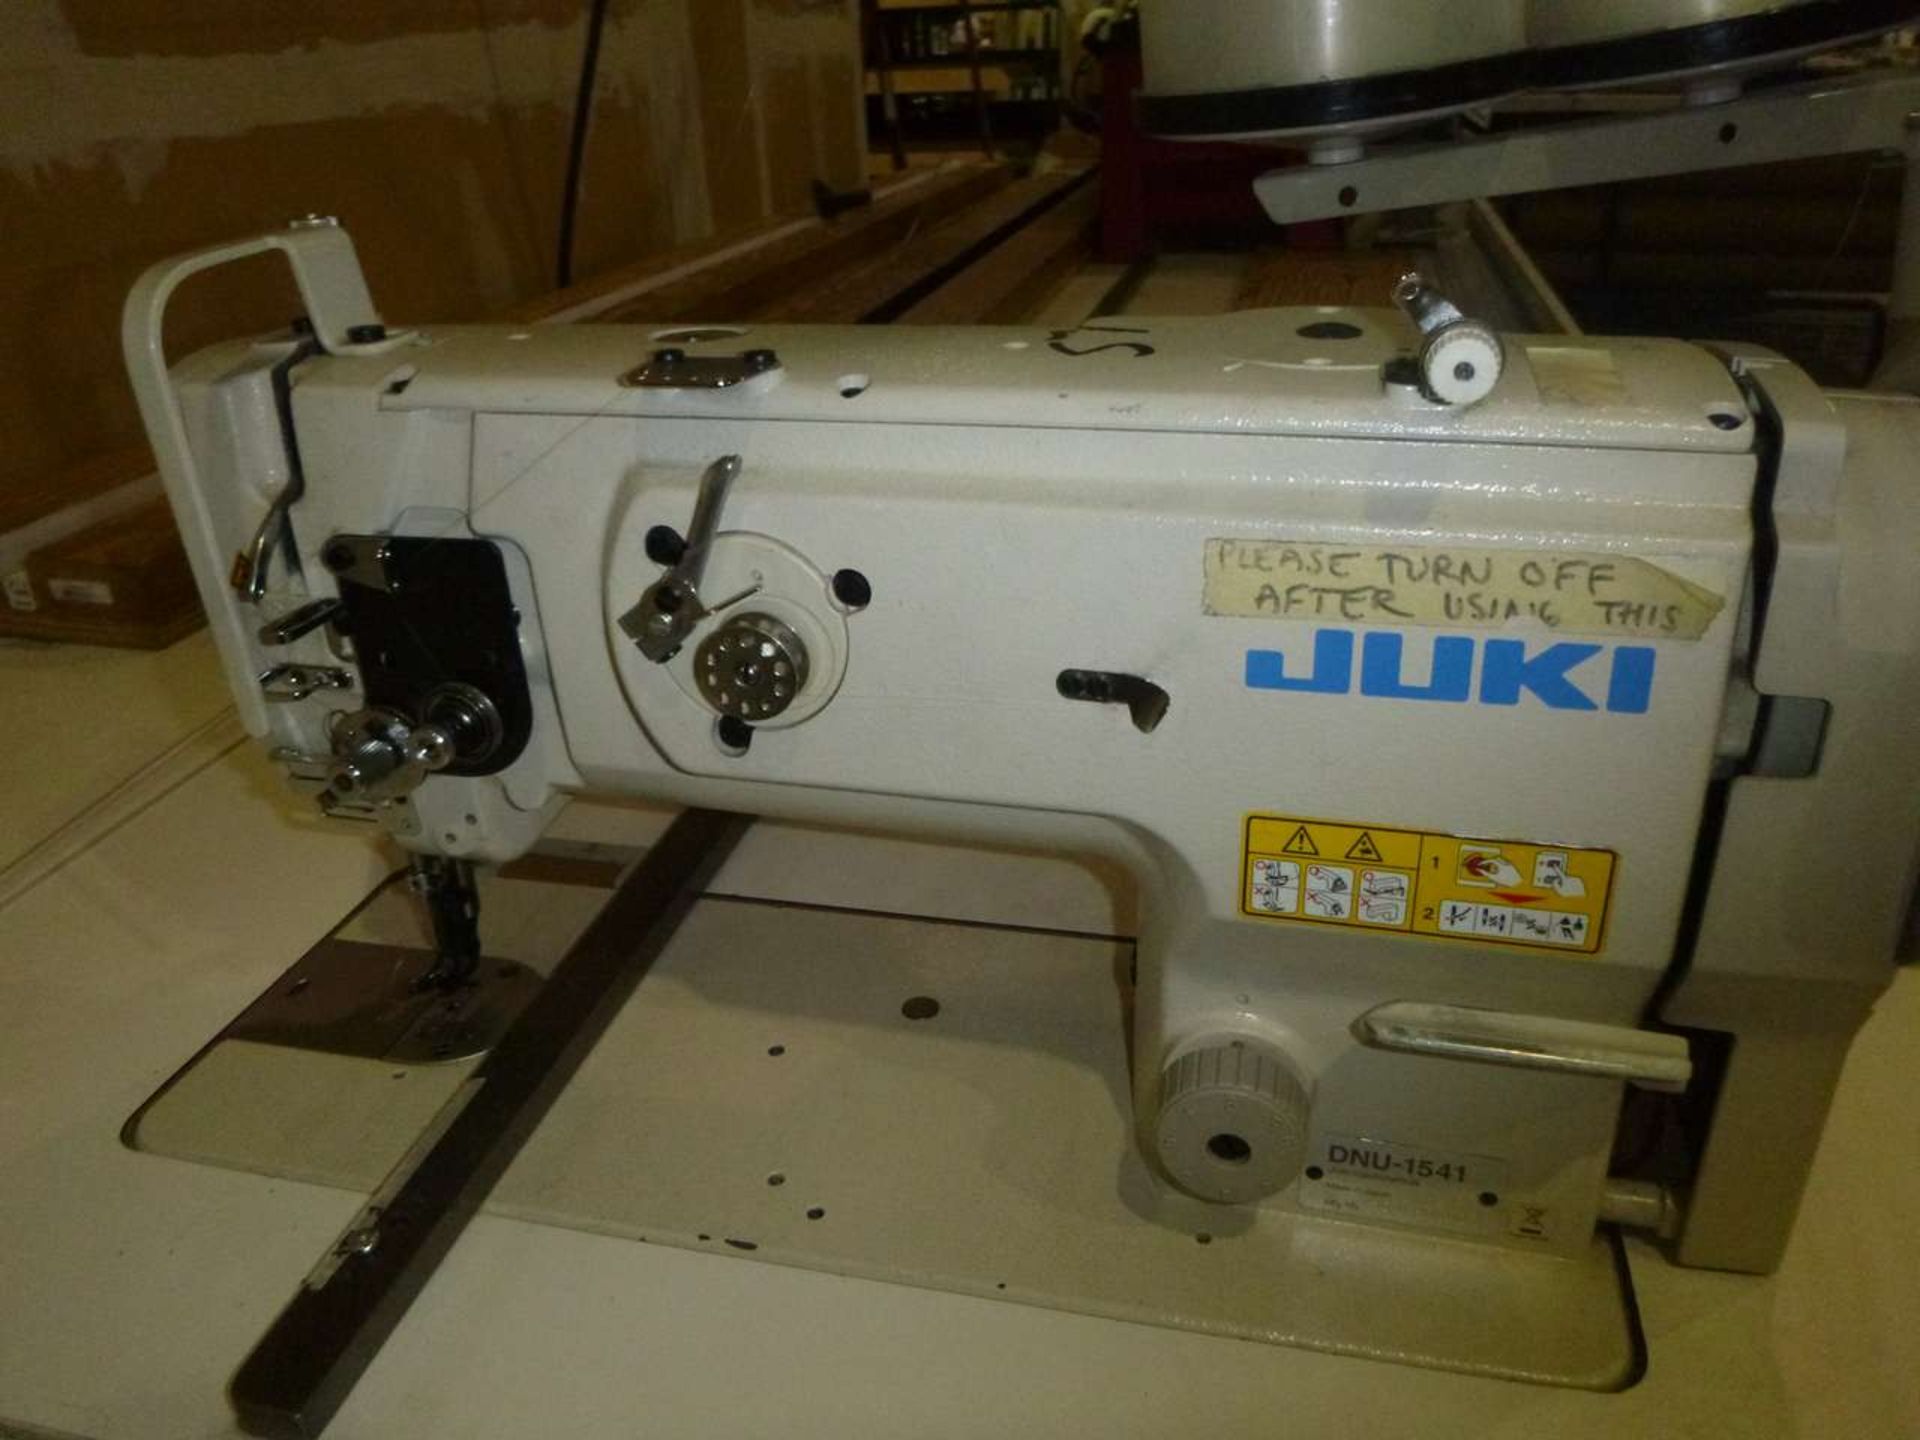 Juki DNU-1541 Sewing Machine - Image 2 of 2